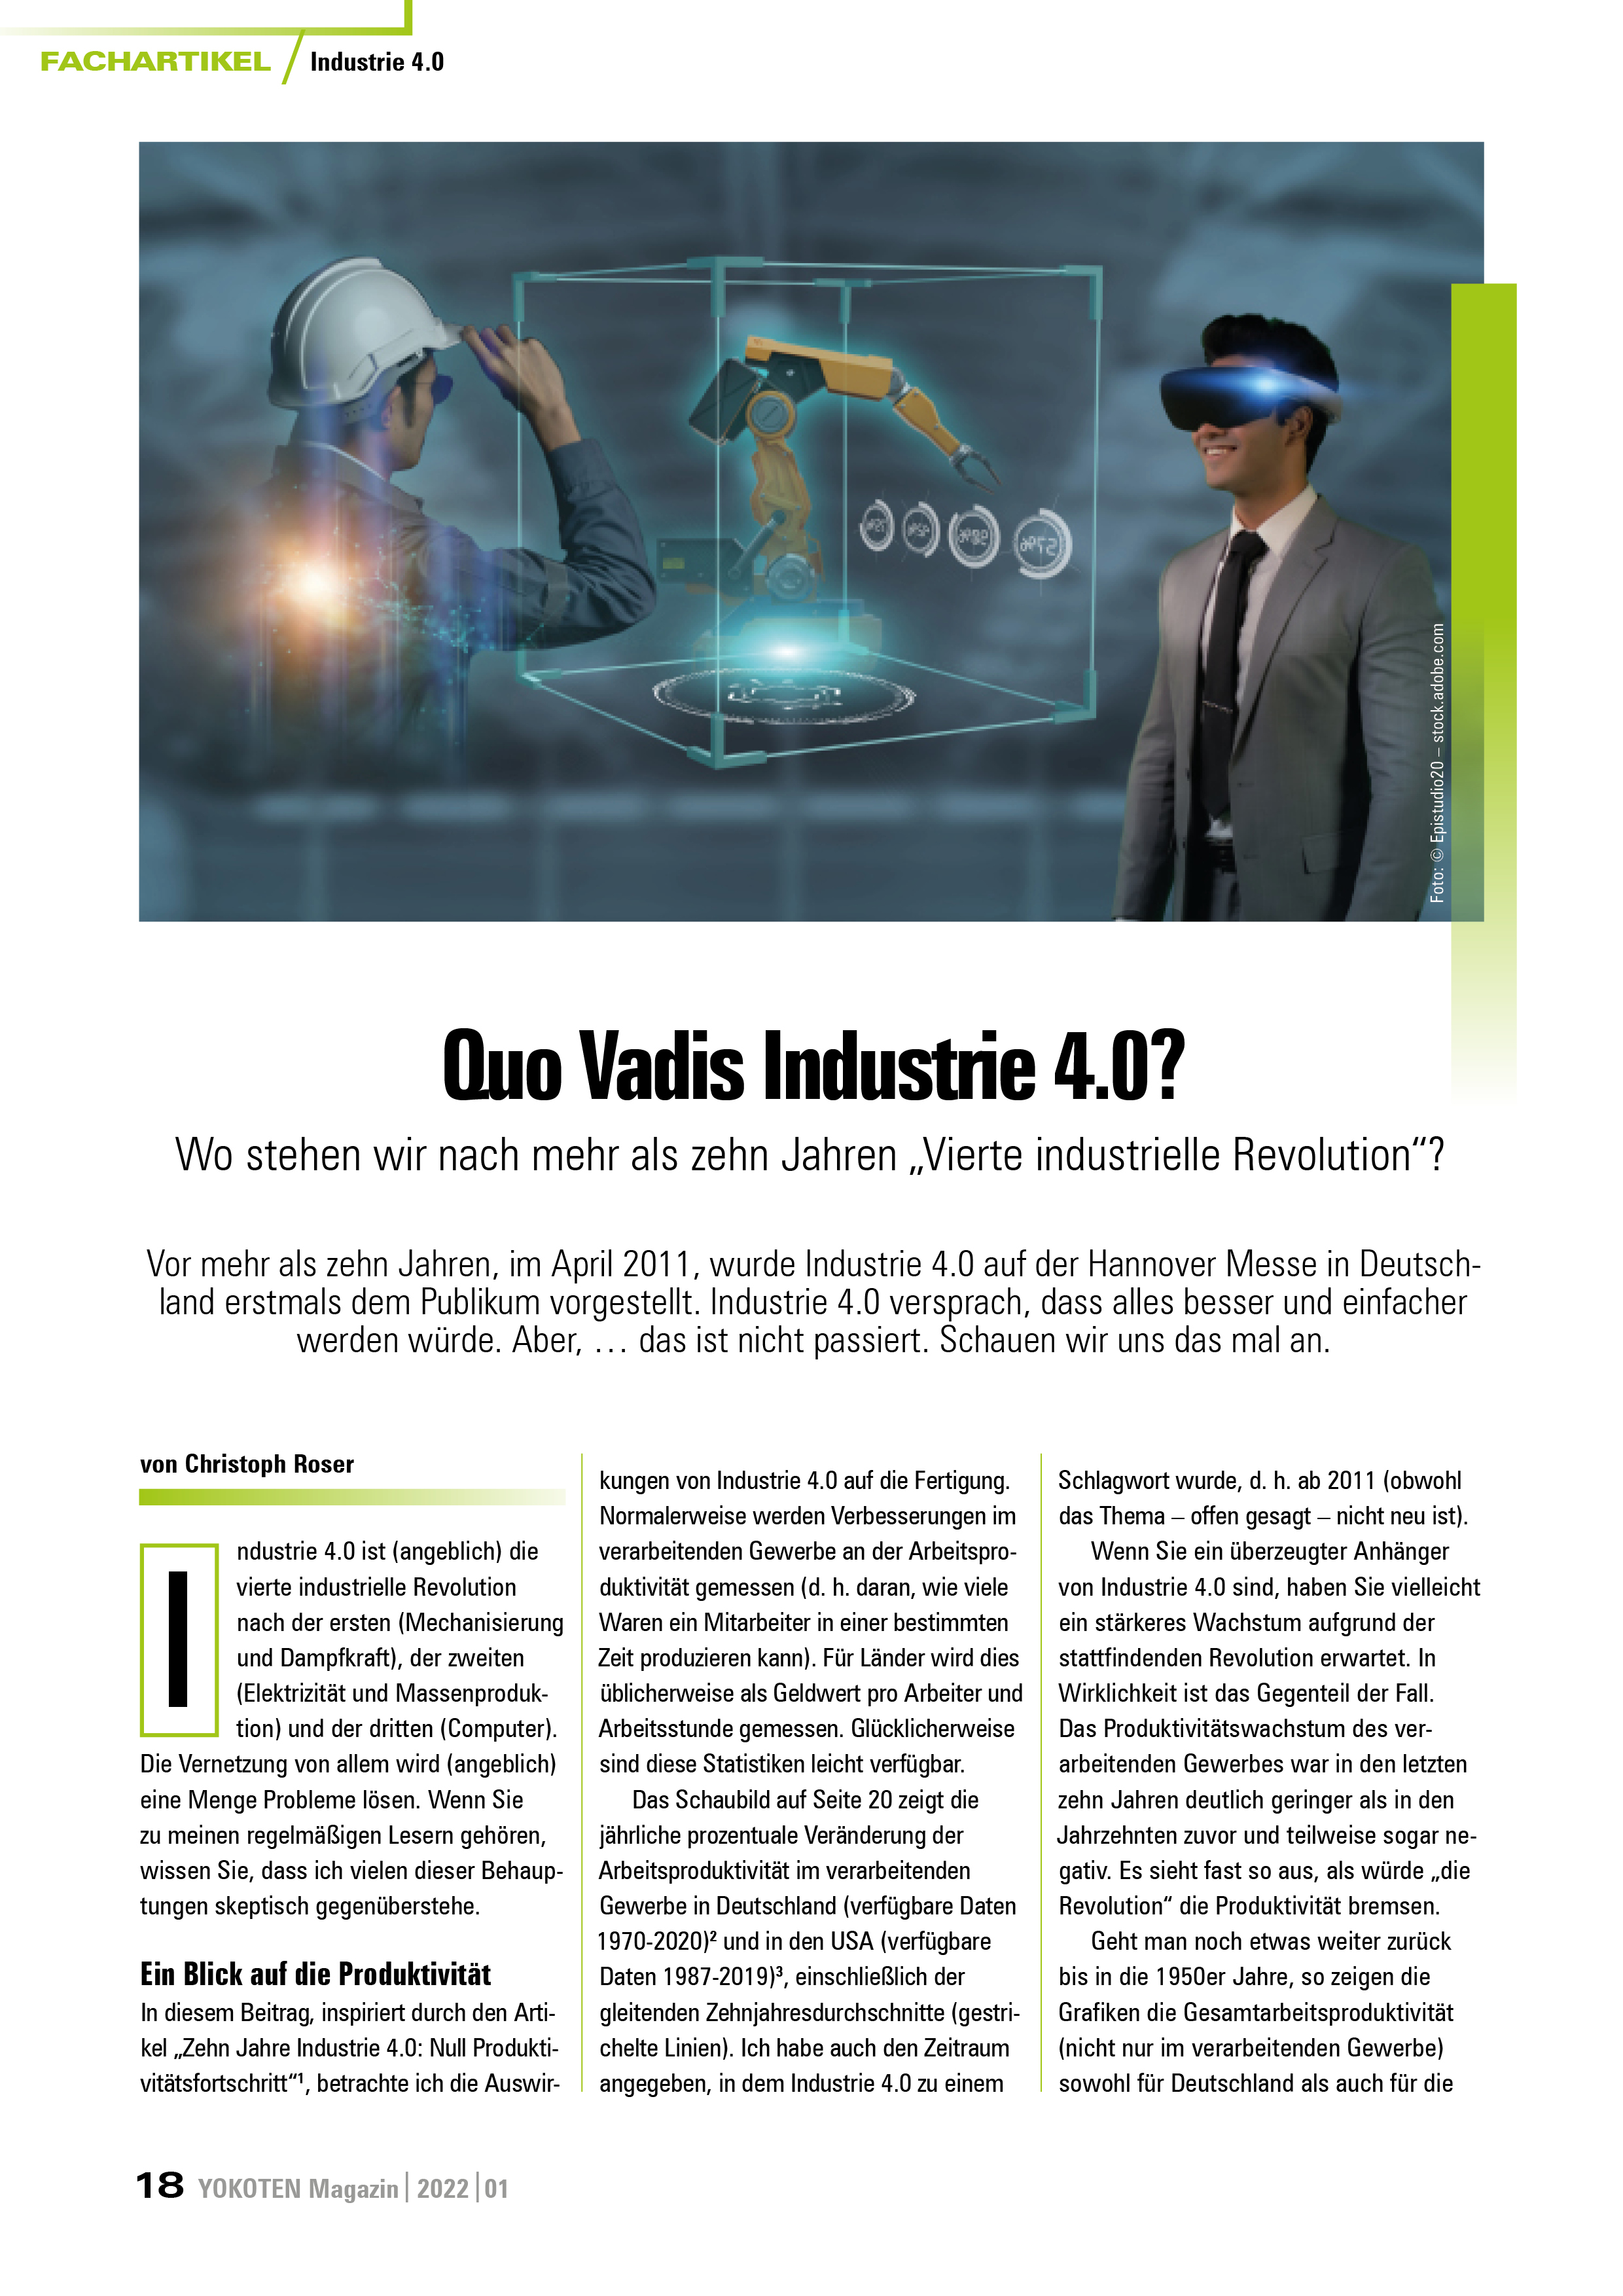 YOKOTEN-Artikel: Quo Vadis Industrie 4.0?